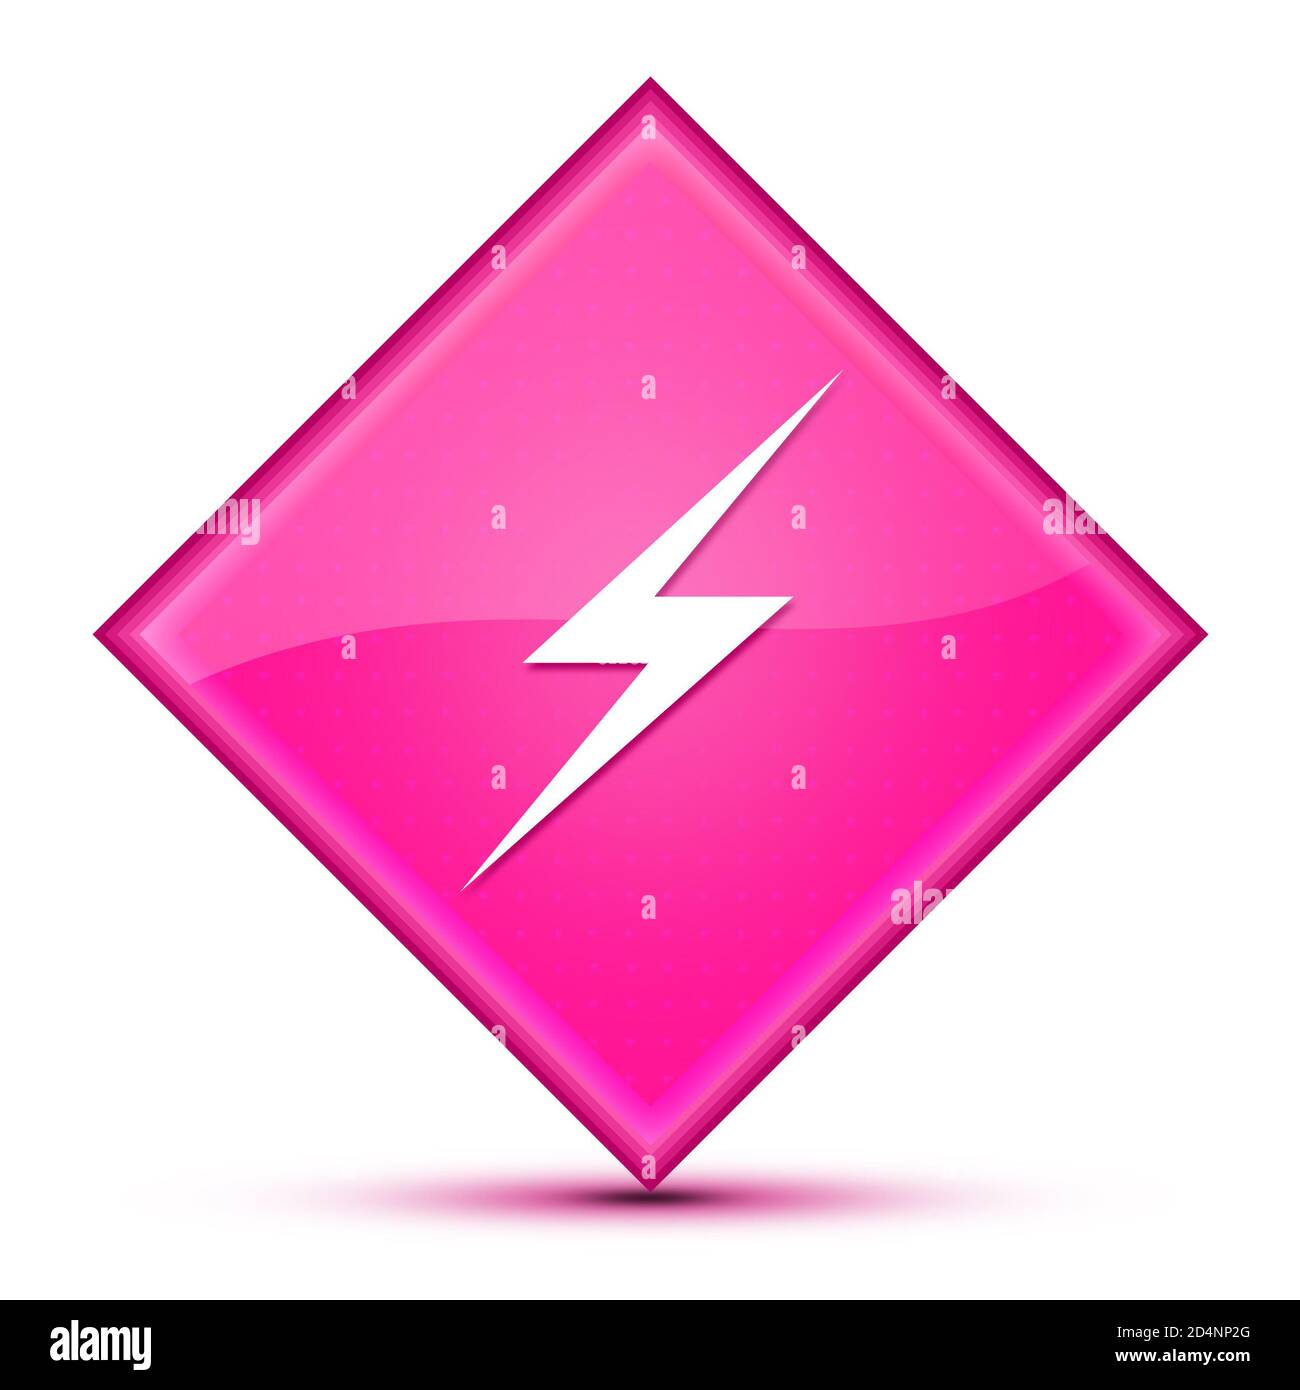 Icona fulminea isolata su un lussuoso astratto a forma di diamante rosa ondulato illustrazione Foto Stock